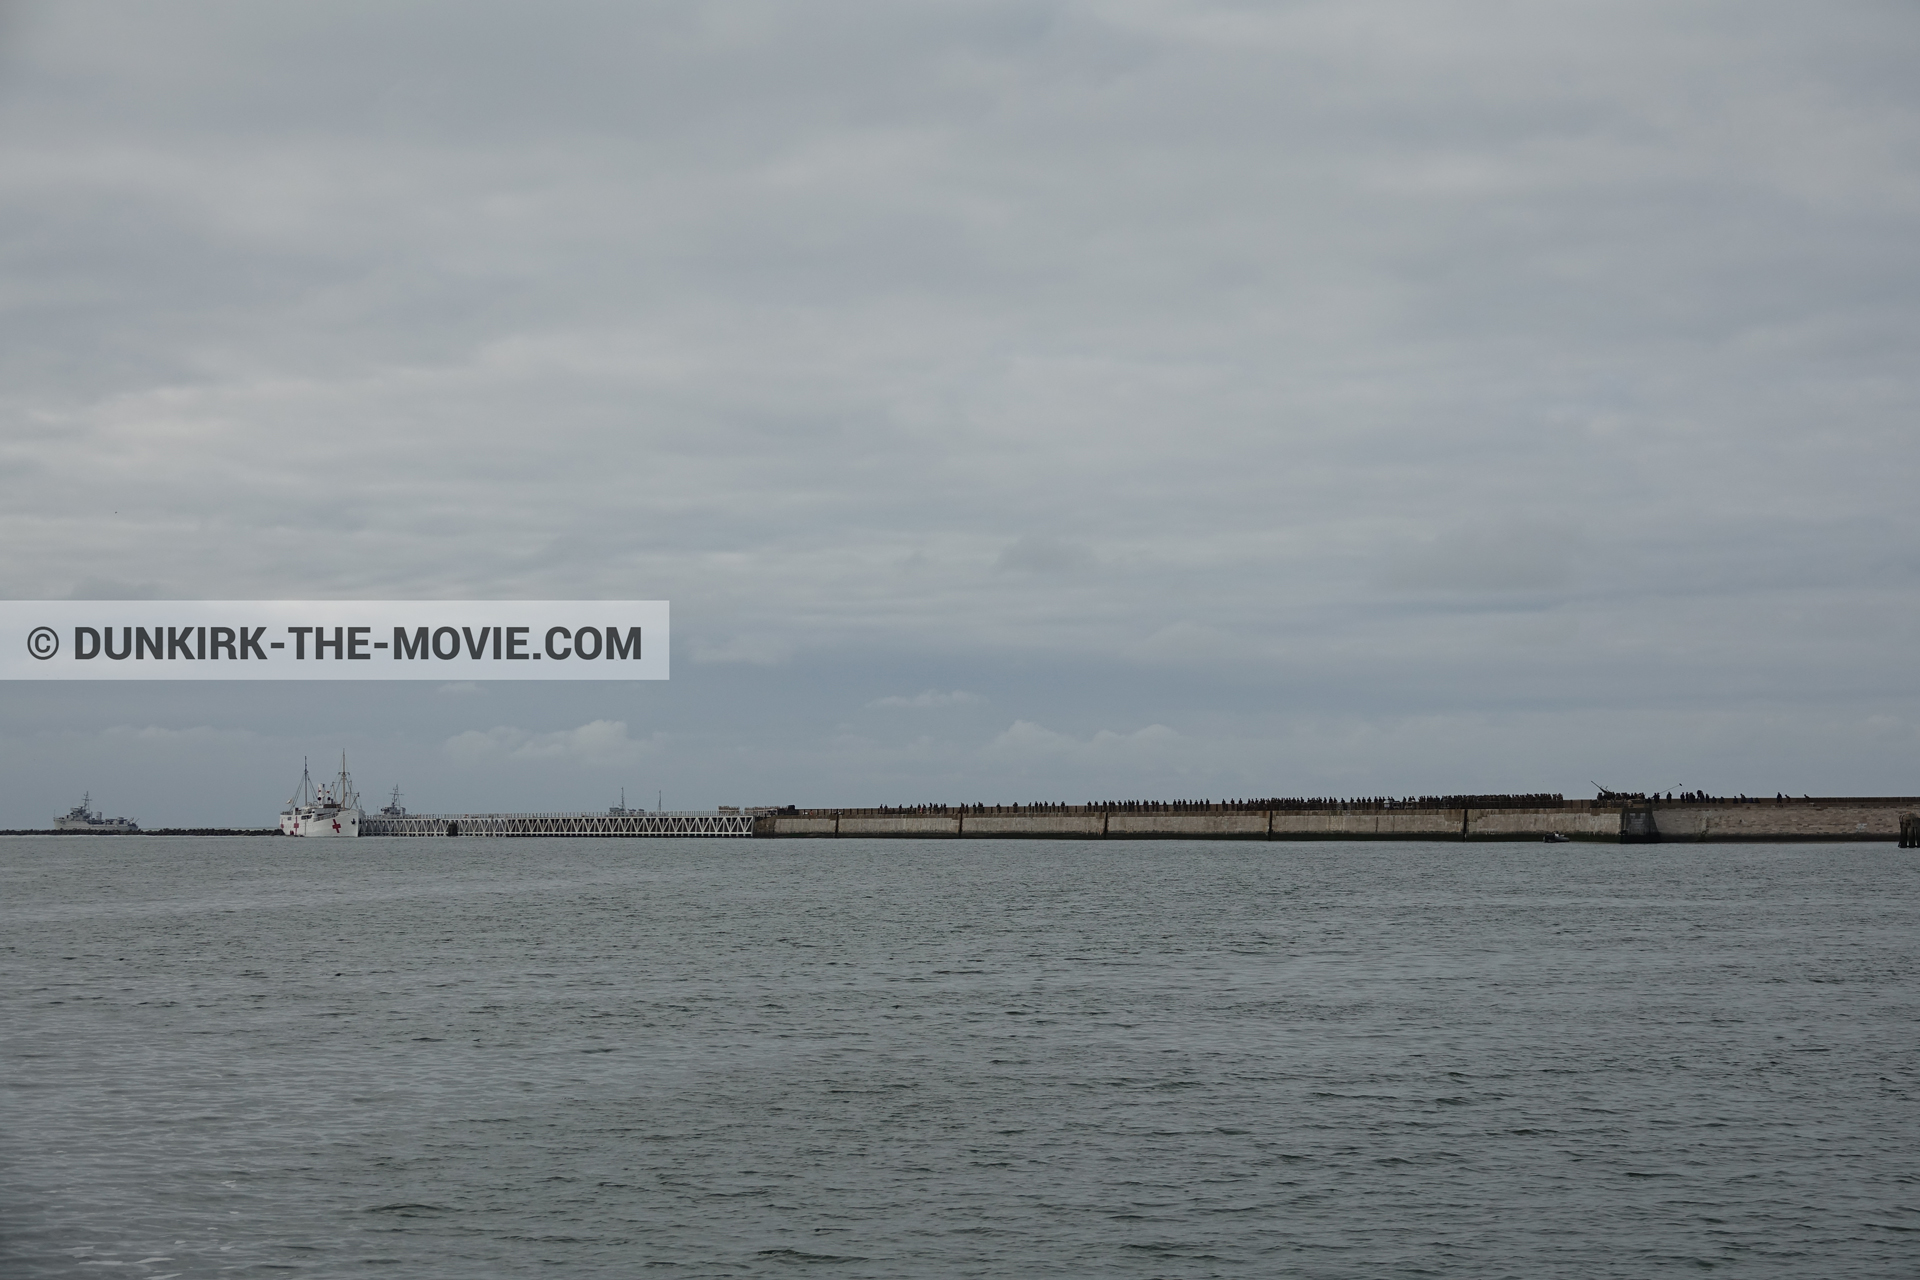 Fotos con muelle del ESTE, mares calma,  durante el rodaje de la película Dunkerque de Nolan